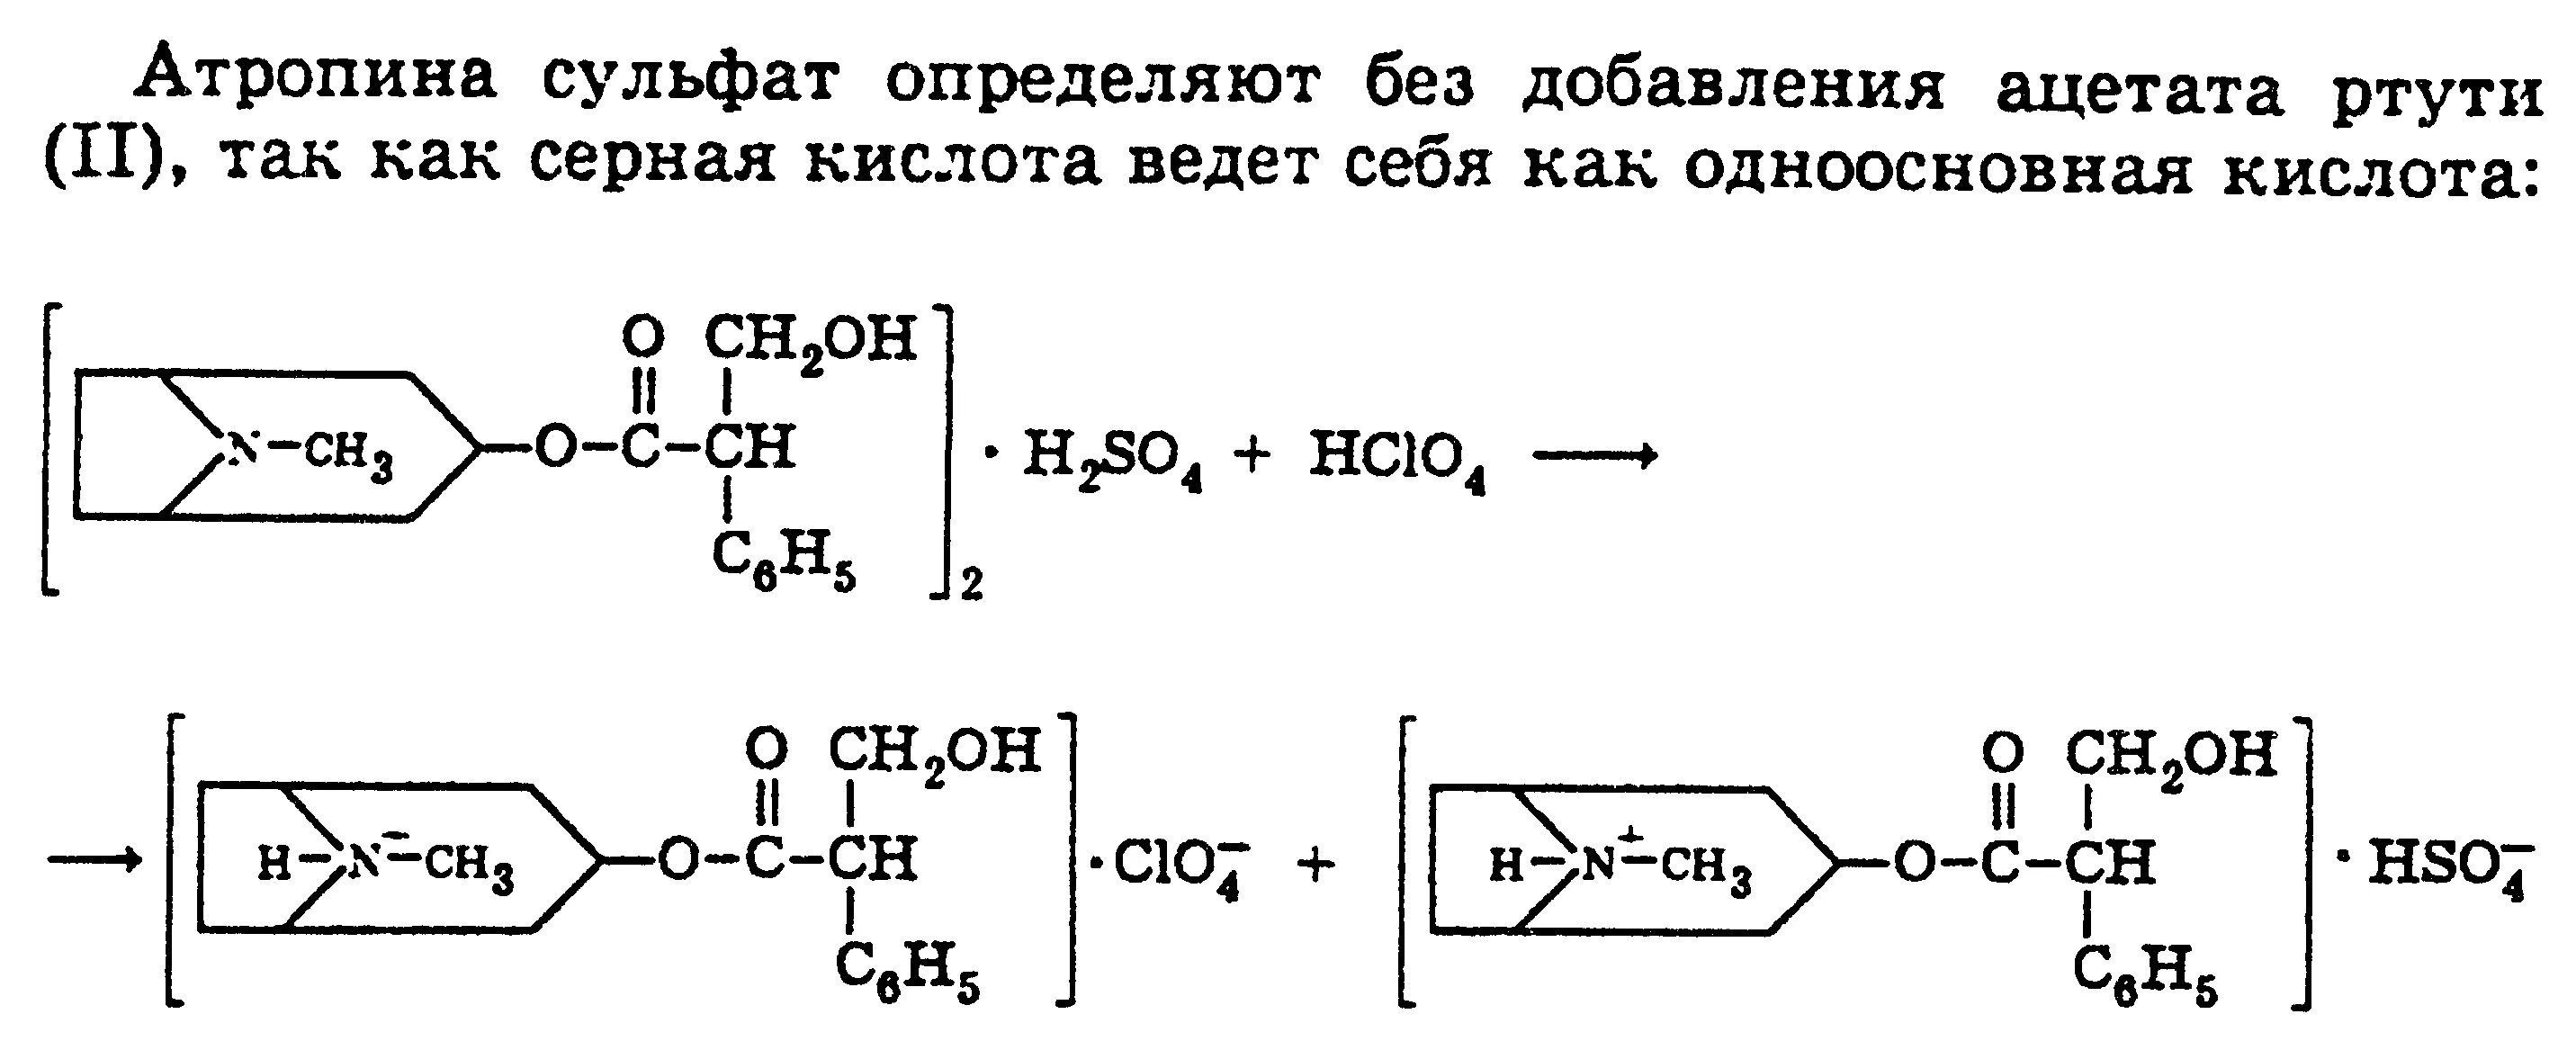 Атропина сульфата 0 1 относится к. Неводное титрование атропина сульфата. Атропина сульфат реакция Количественная. Атропина сульфат алкалиметрия. Алкалиметрия атропина сульфата реакция.